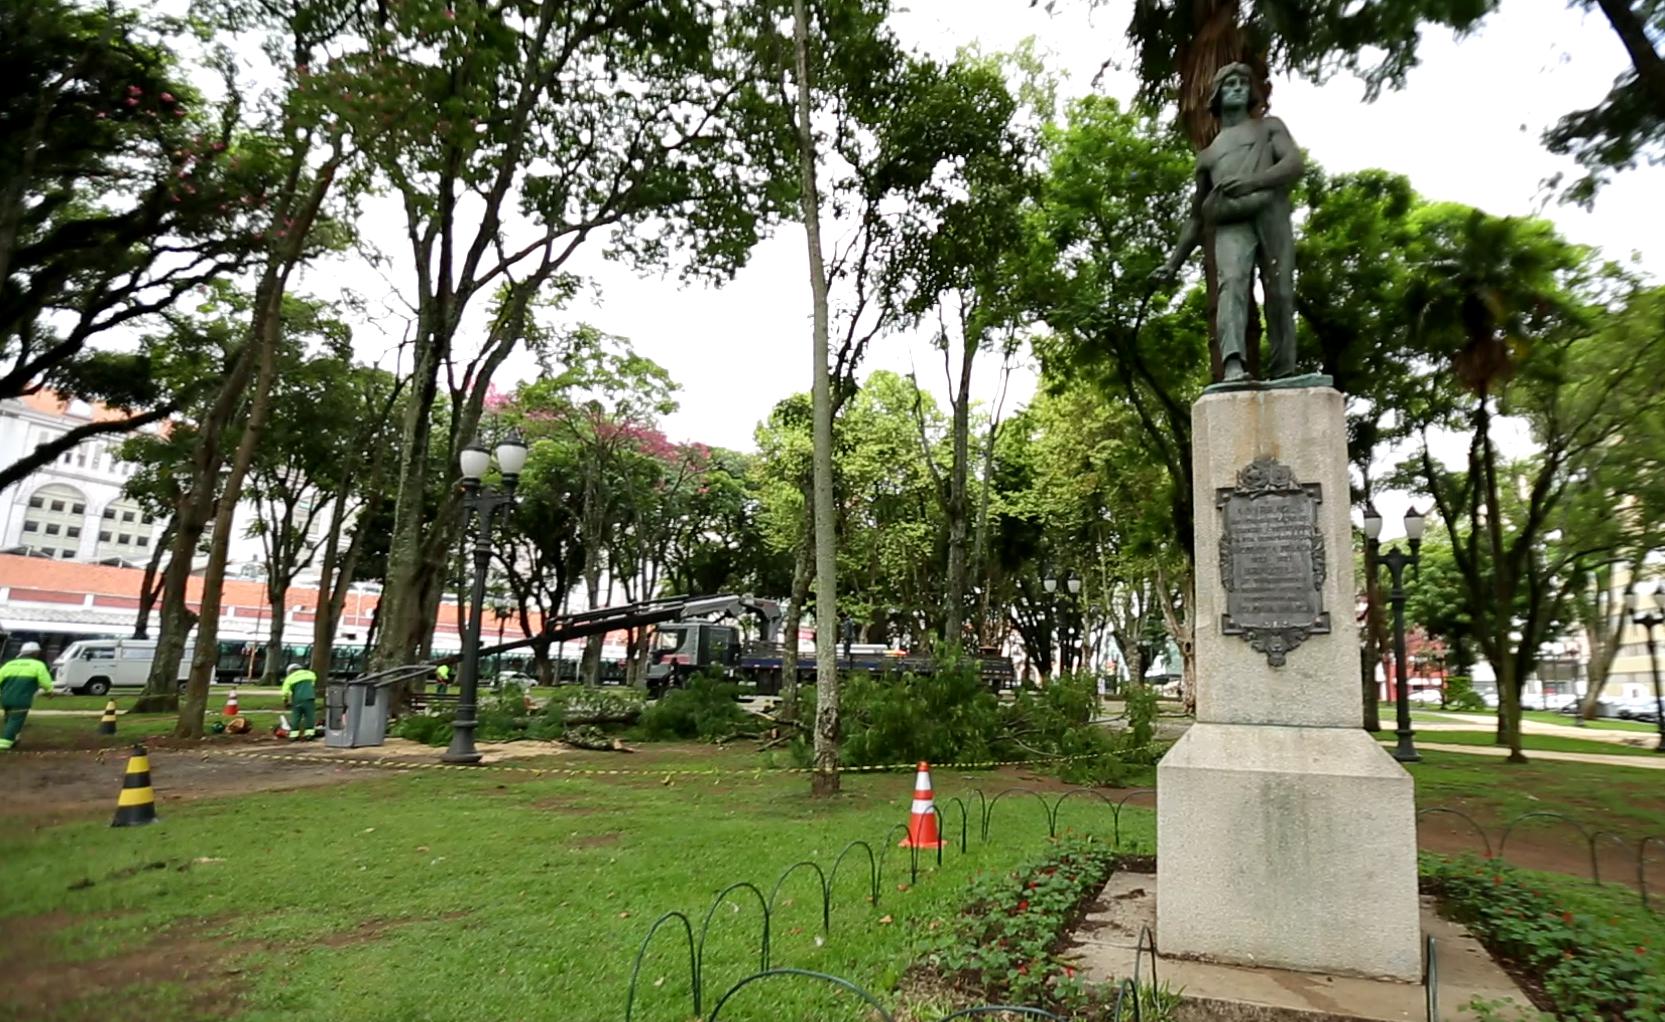  Praça Eufrásio Correia recebe obras de revitalização